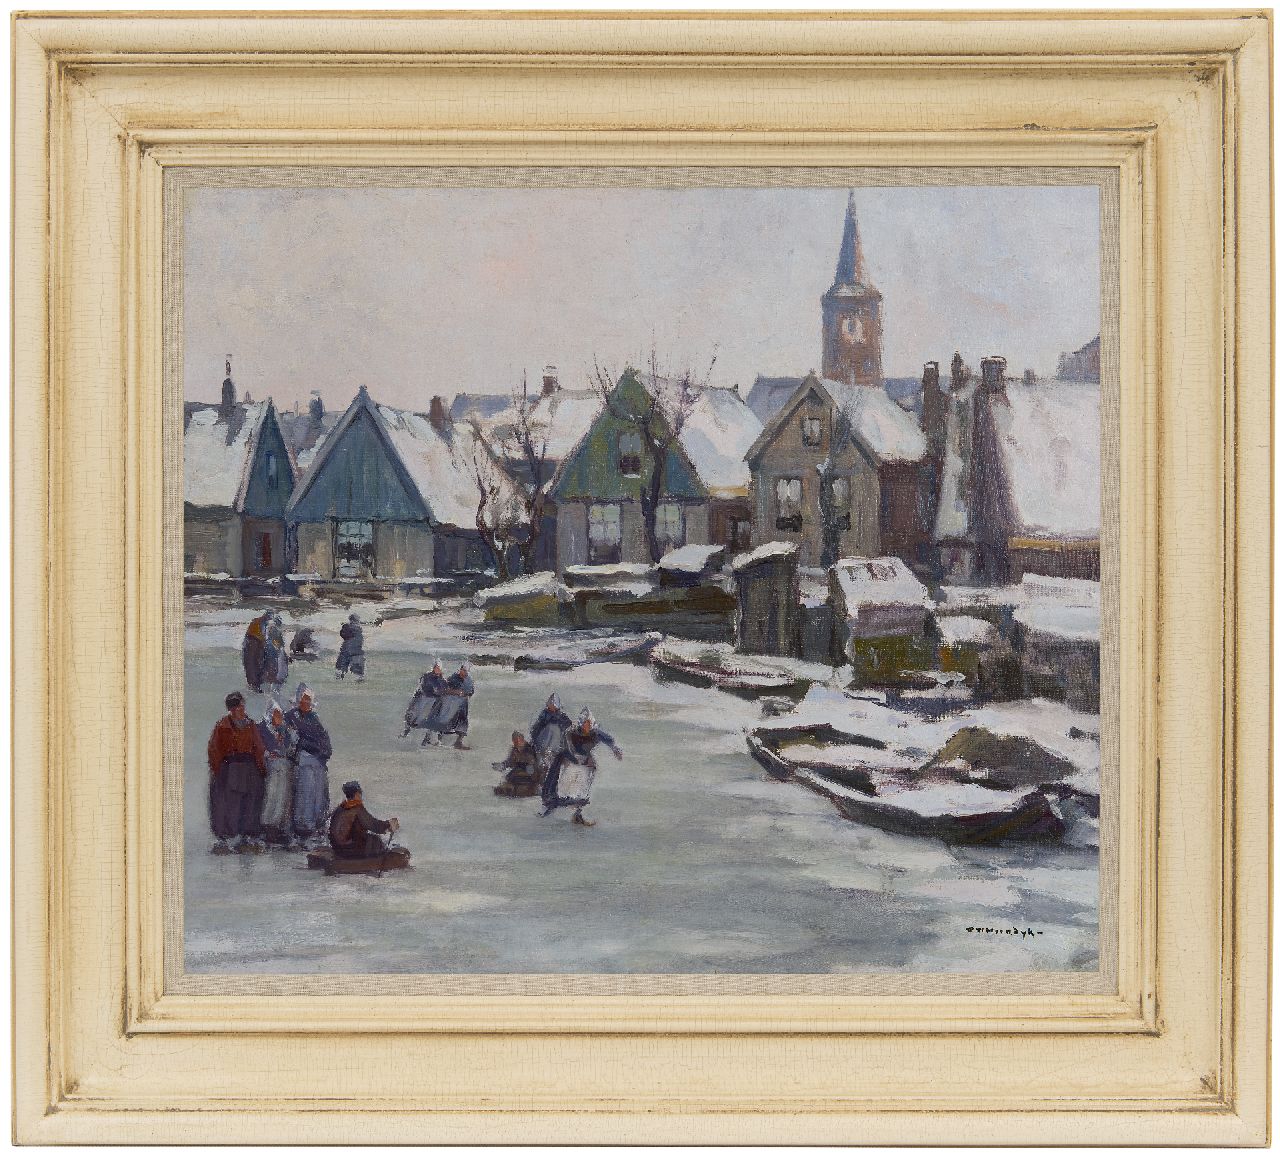 Noordijk W.F.  | 'Willem' Frederik Noordijk | Paintings offered for sale | Skaters in Volendam, oil on canvas 46.3 x 54.4 cm, signed l.r.